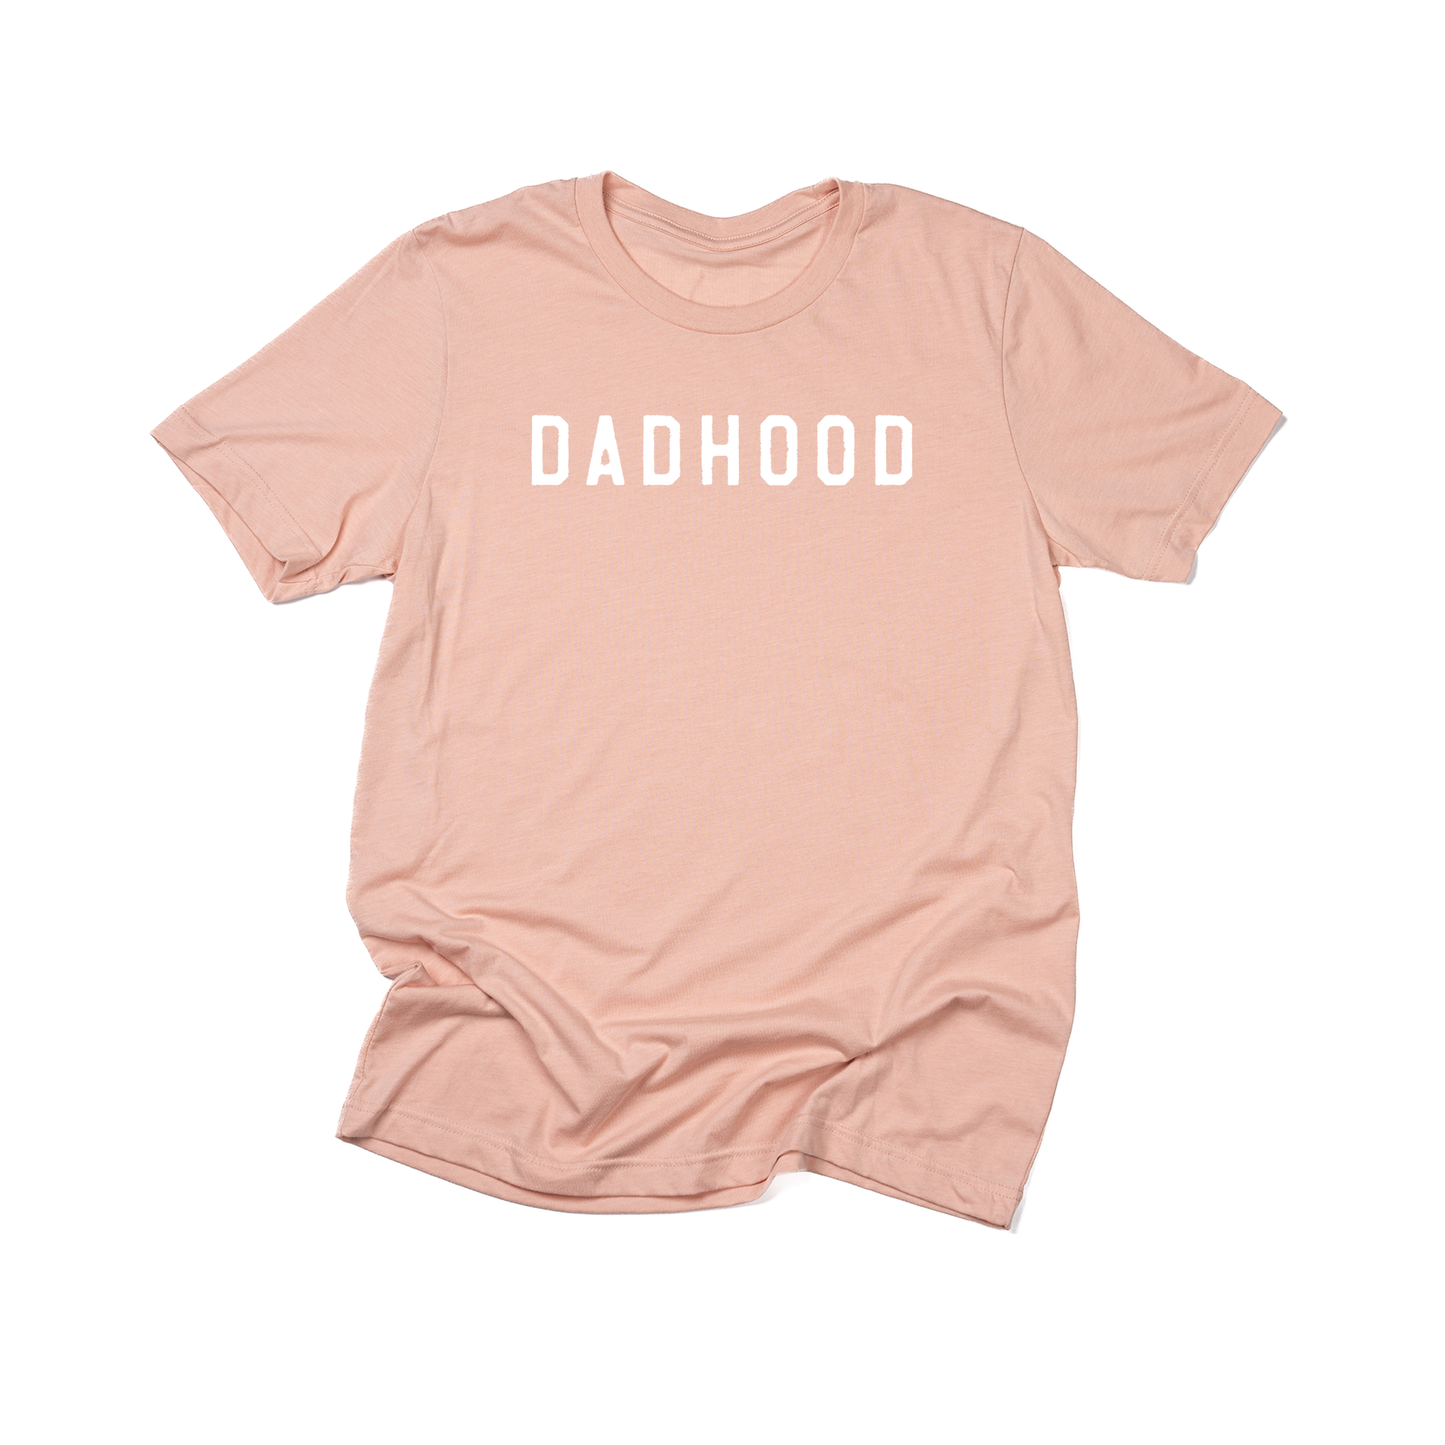 Dadhood (Rough, White) - Tee (Peach)